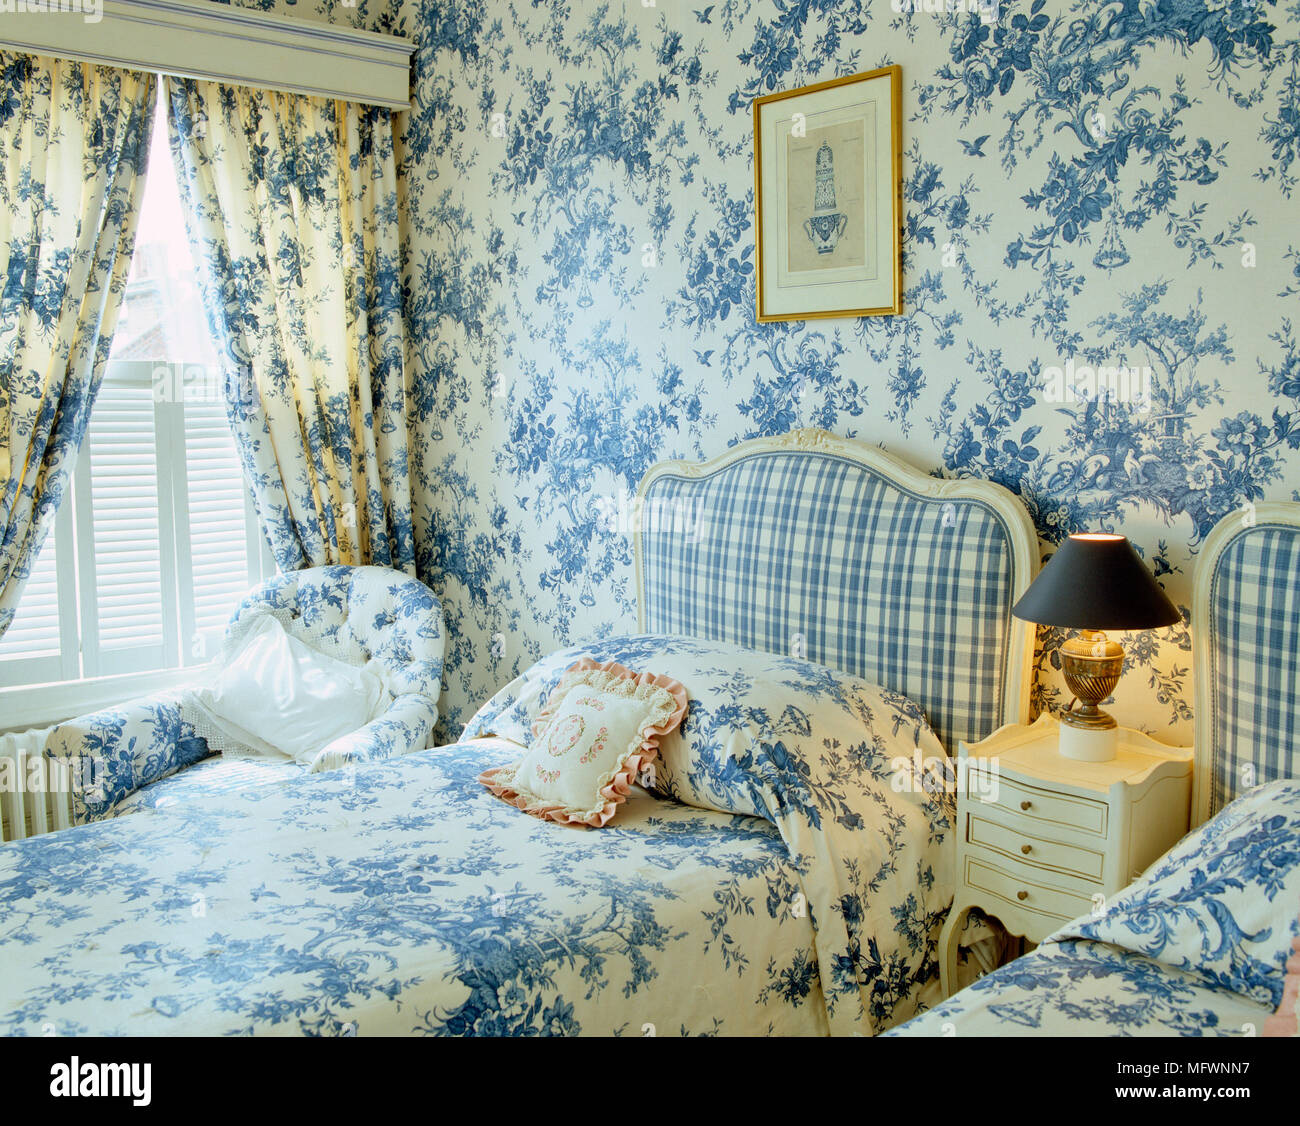 Einzelbetten mit blauen und weißen Toile de Jouy Bettwäsche und passenden  Vorhängen Stockfotografie - Alamy